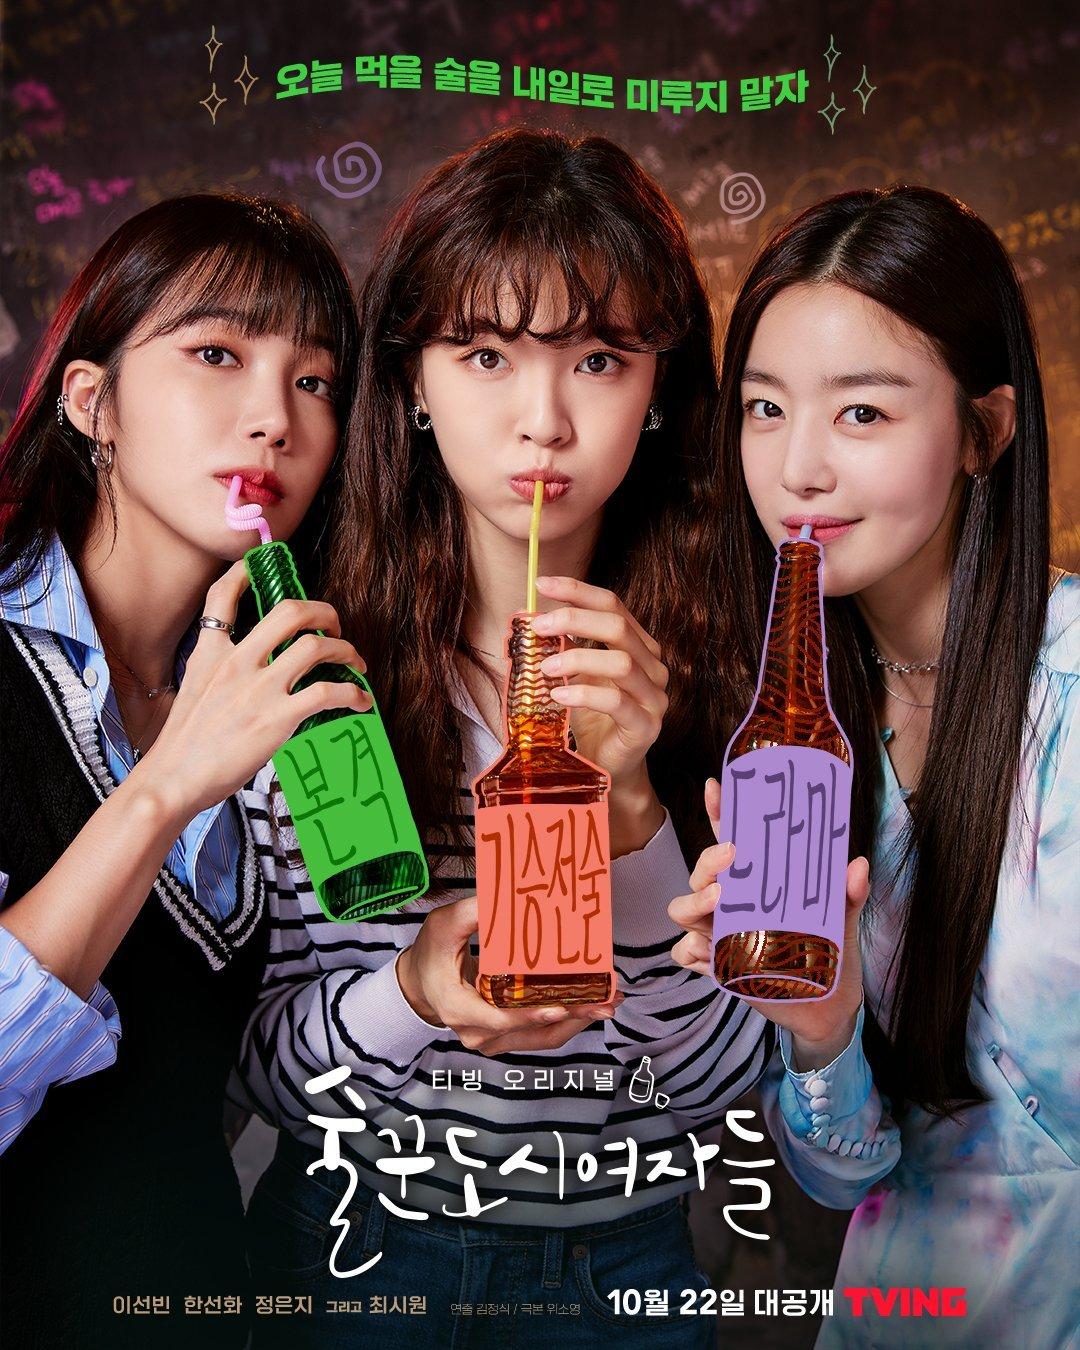 Phim Jung Eun Ji: Những quý cô say xỉn – Work later, drink now (2021)